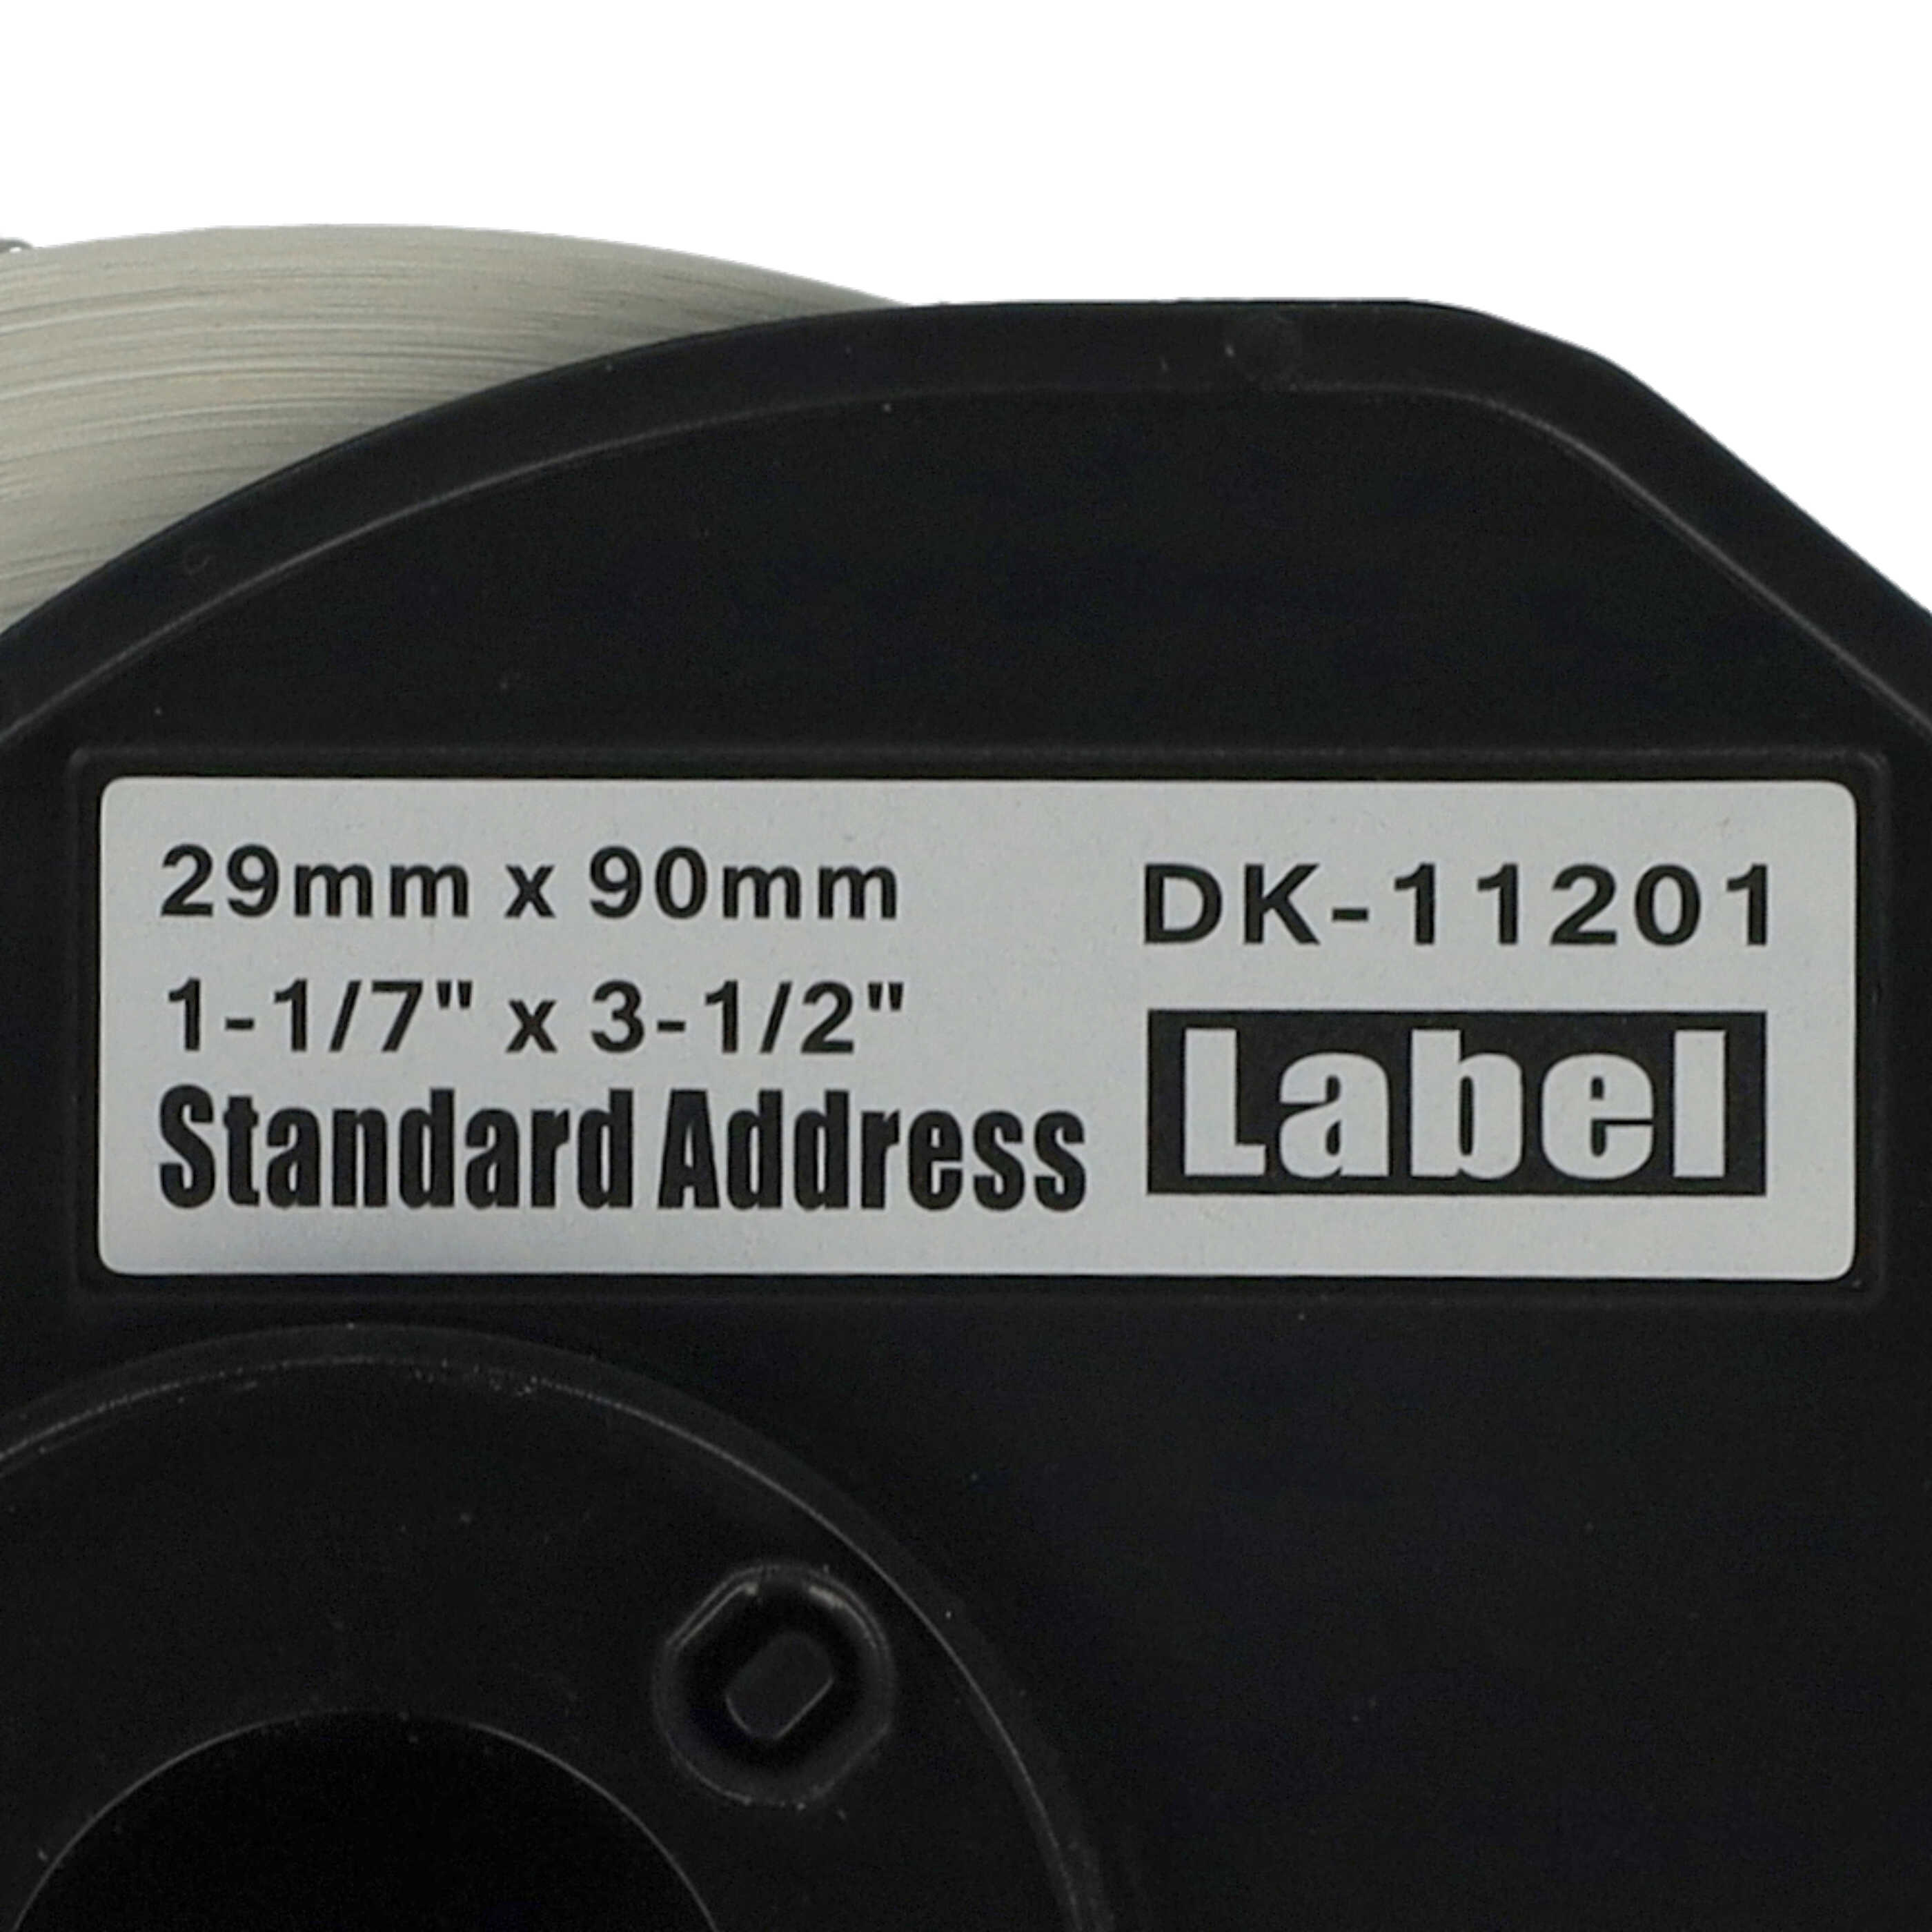 10x Étiquettes remplacent Brother DK-11201 pour imprimante étiqueteuse - 29mm x 90mm + support